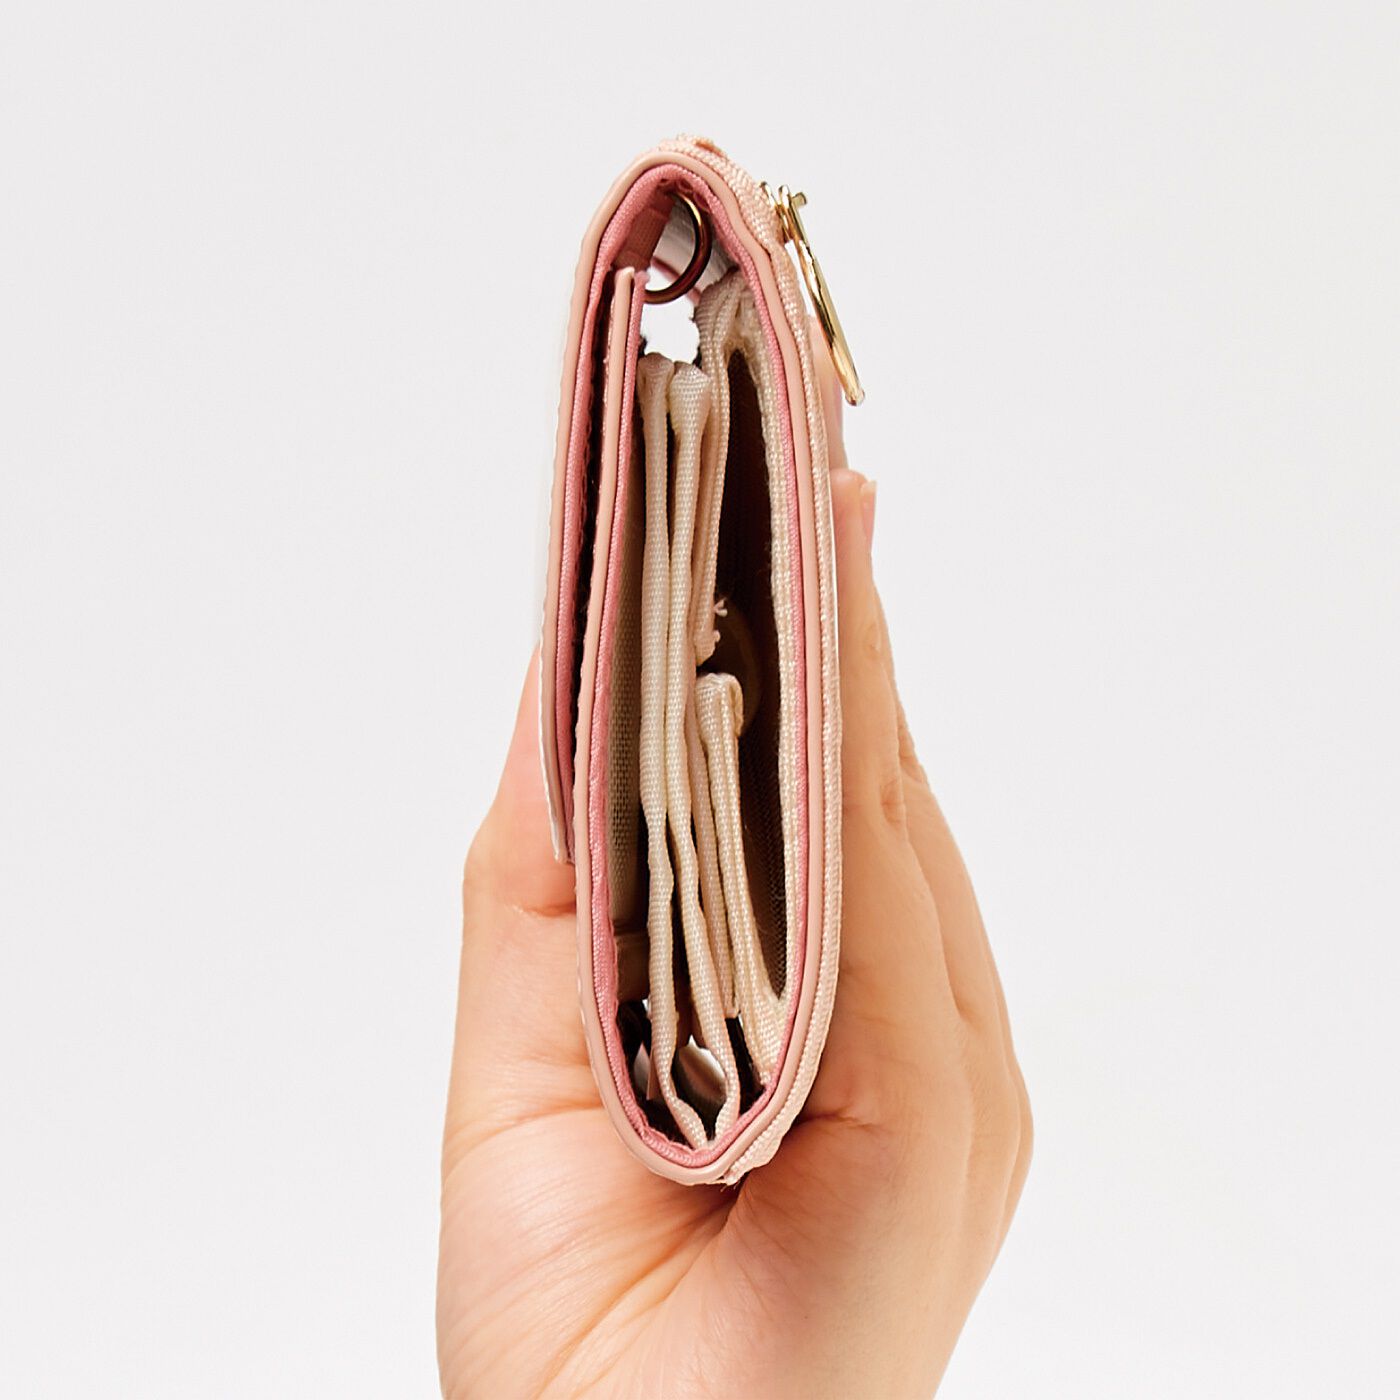 Real Stock|LITALICO×CCP　見渡しやすさ＆つかみ取りやすさ抜群 スマホも入る透けるメッシュ財布〈ピンク〉|たっぷり容量でもほどよい厚さで持ち歩きやすい。